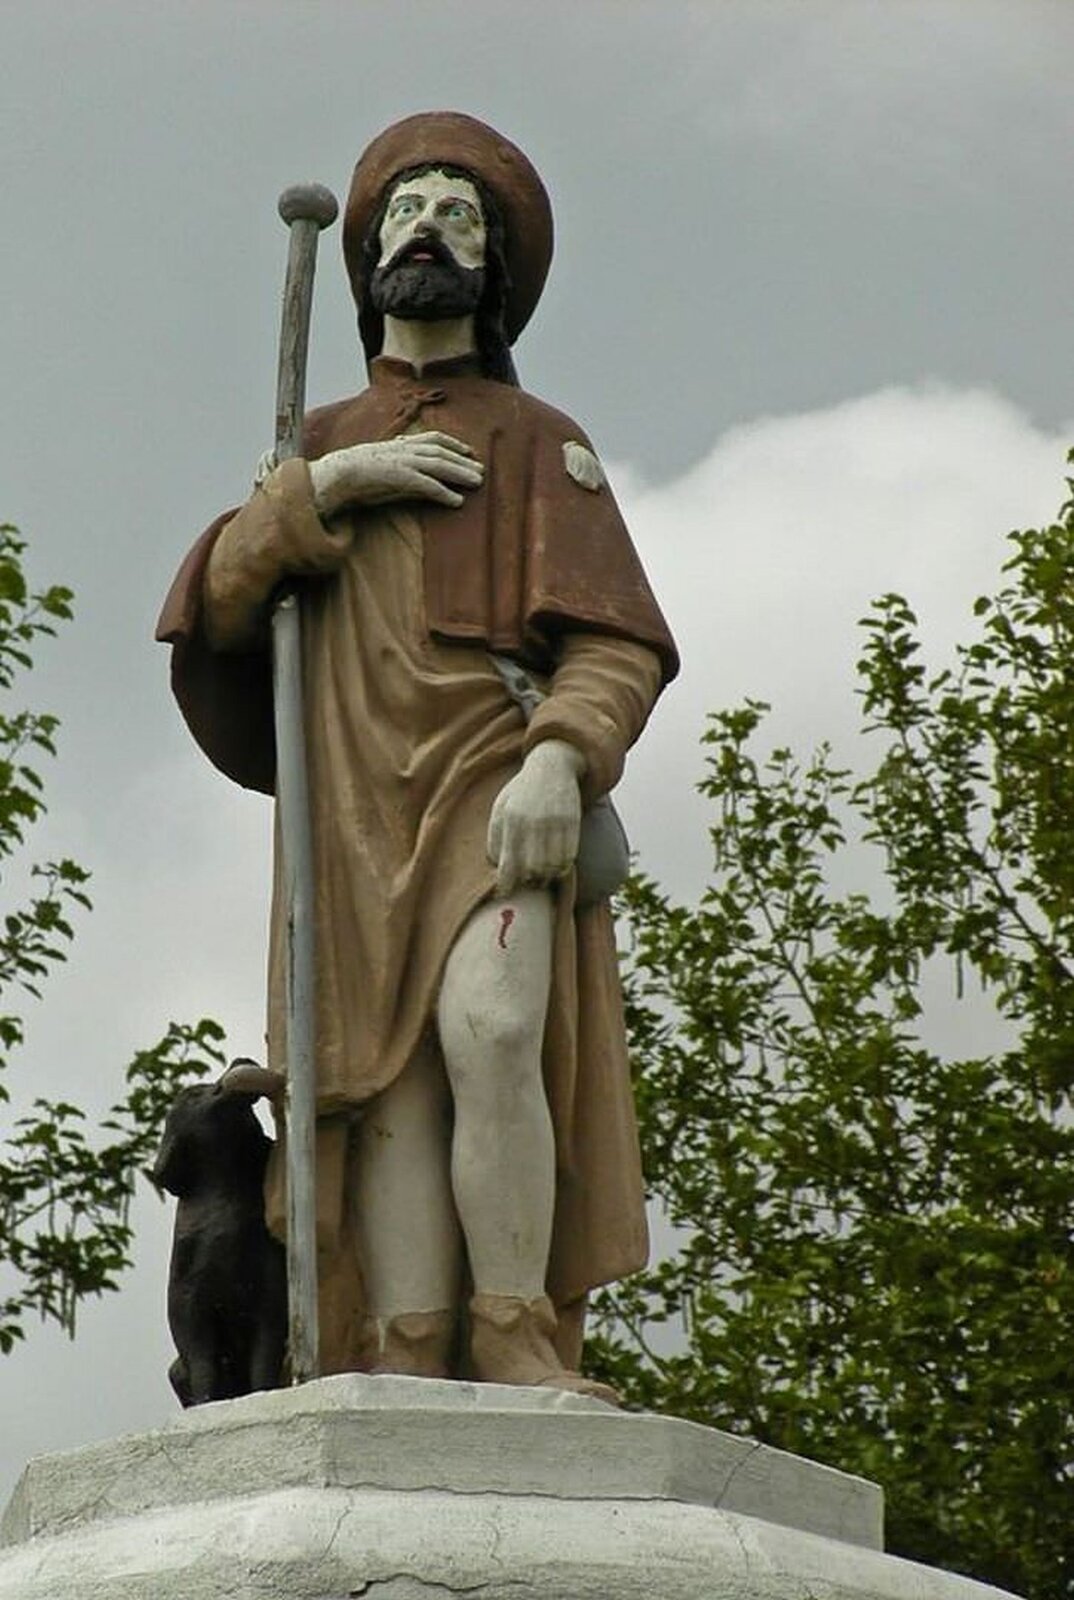 lustracja przedstawia figurę świętego Rocha. Święty w dłoni trzyma laskę, a obok niego siedzi pies. Na głowie ma brązowe nakrycie i szatę w takim samym kolorze.